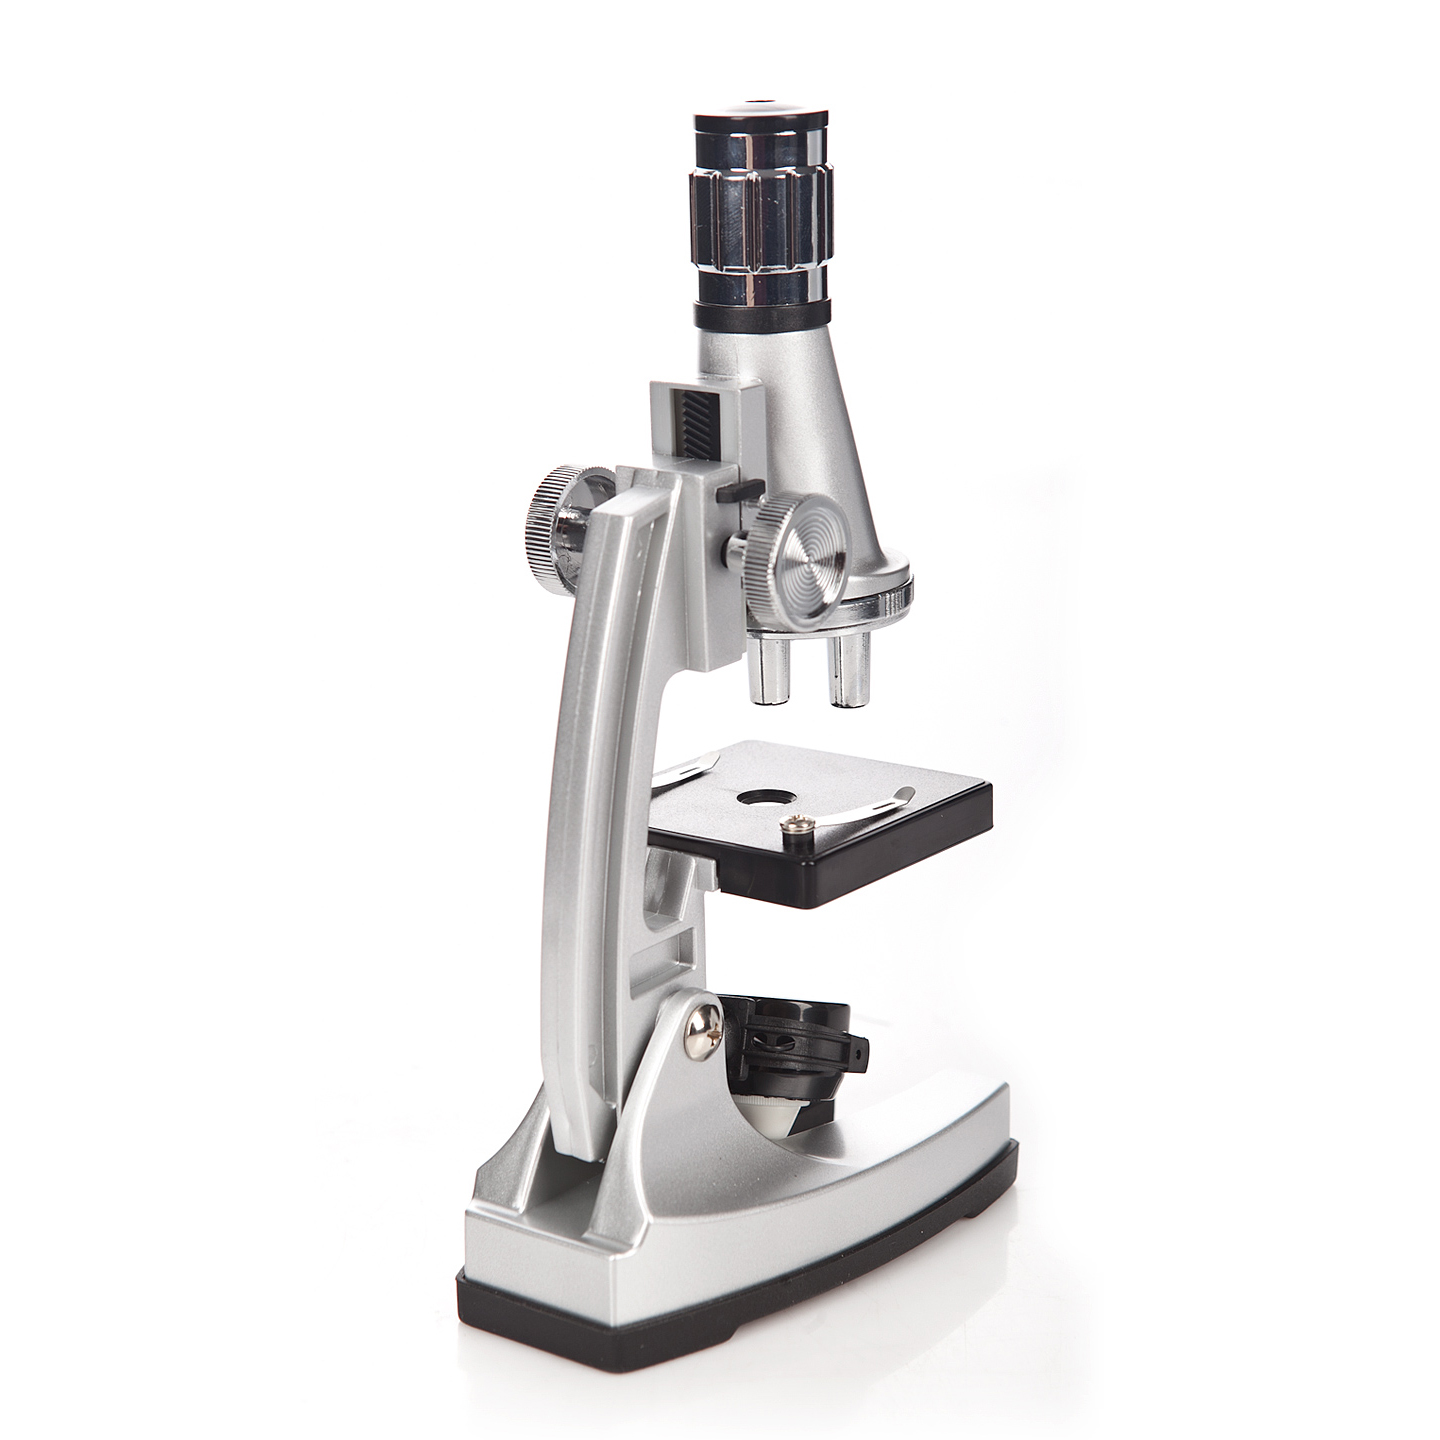 Для чего зеркало в микроскопе. Микроскоп ZKSTX-1200. Микроскоп "ученый" №2 115816. Микроскоп "ученый" №1 116116. Ученый с микроскопом.